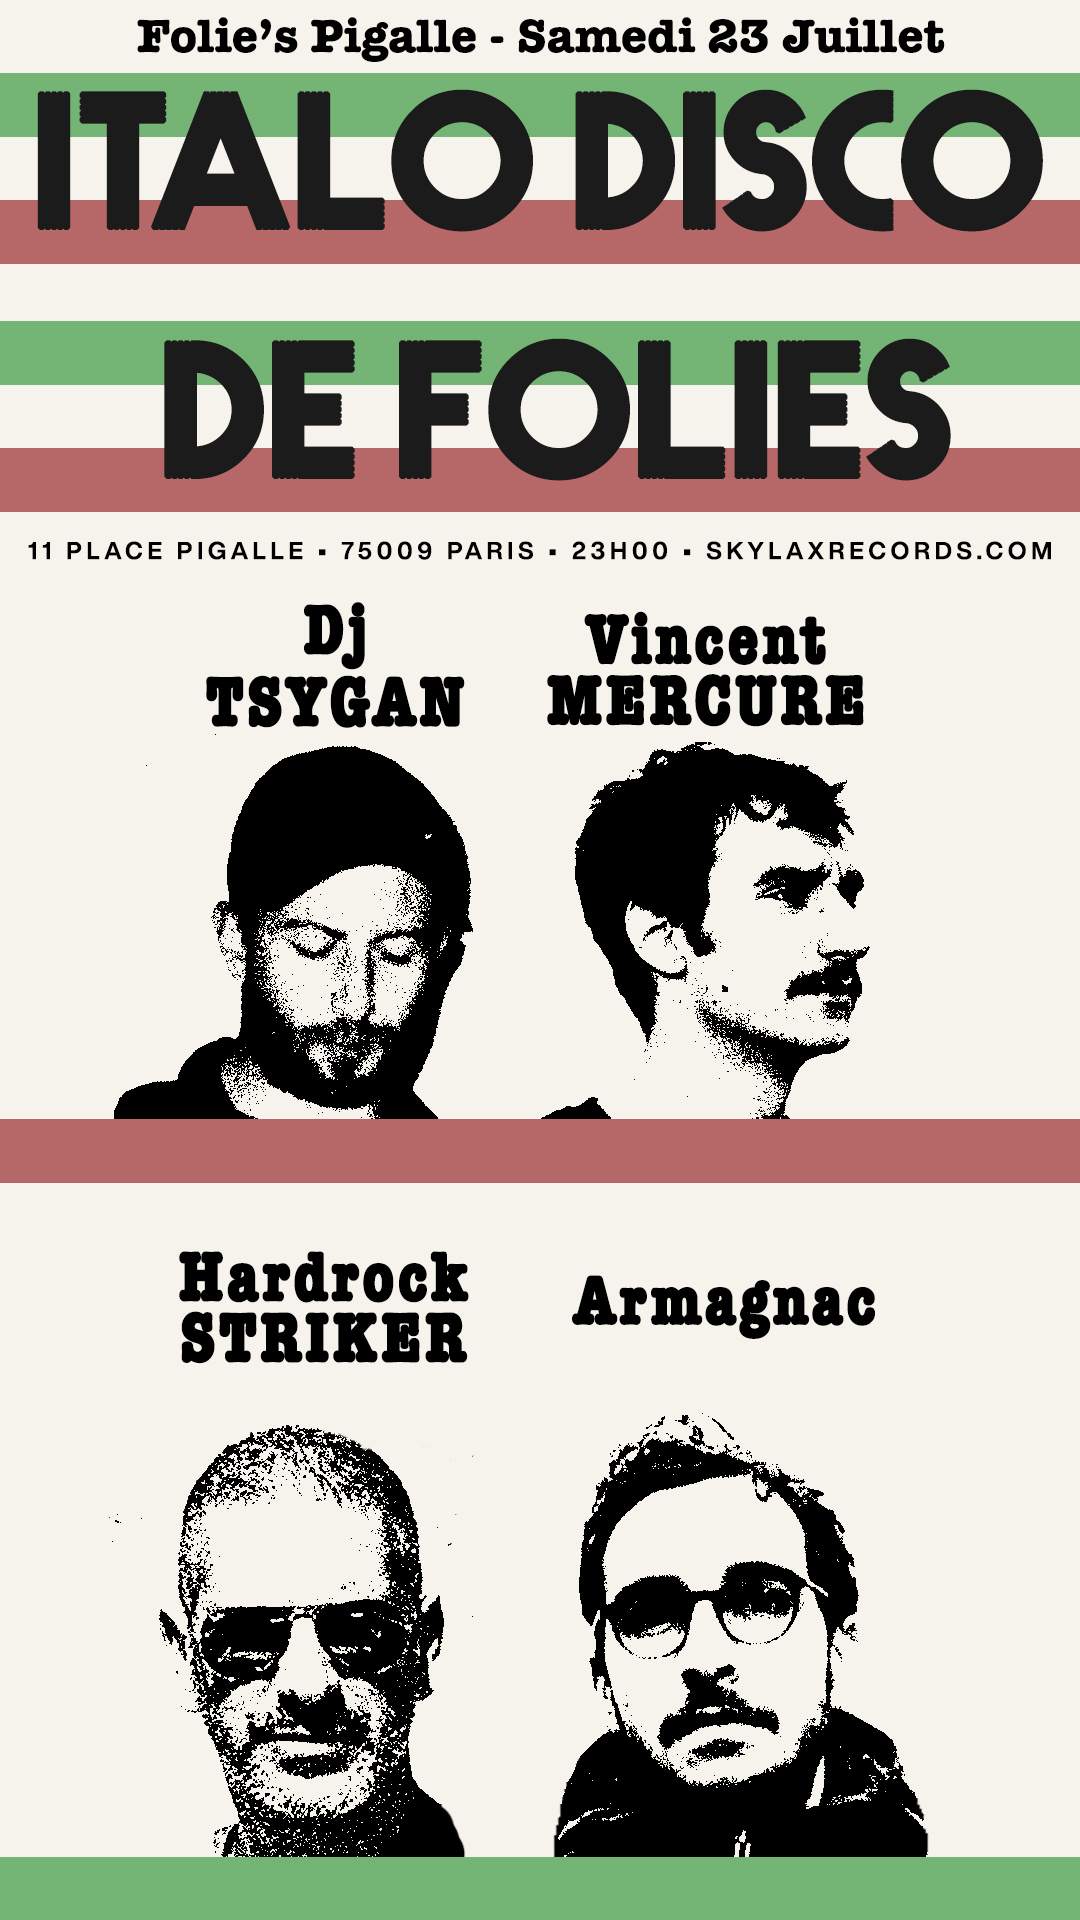 Italo Disco de Folies with Hardrock Striker, DJ Tsygan, Armagnac & Vincent Mercure - フライヤー裏